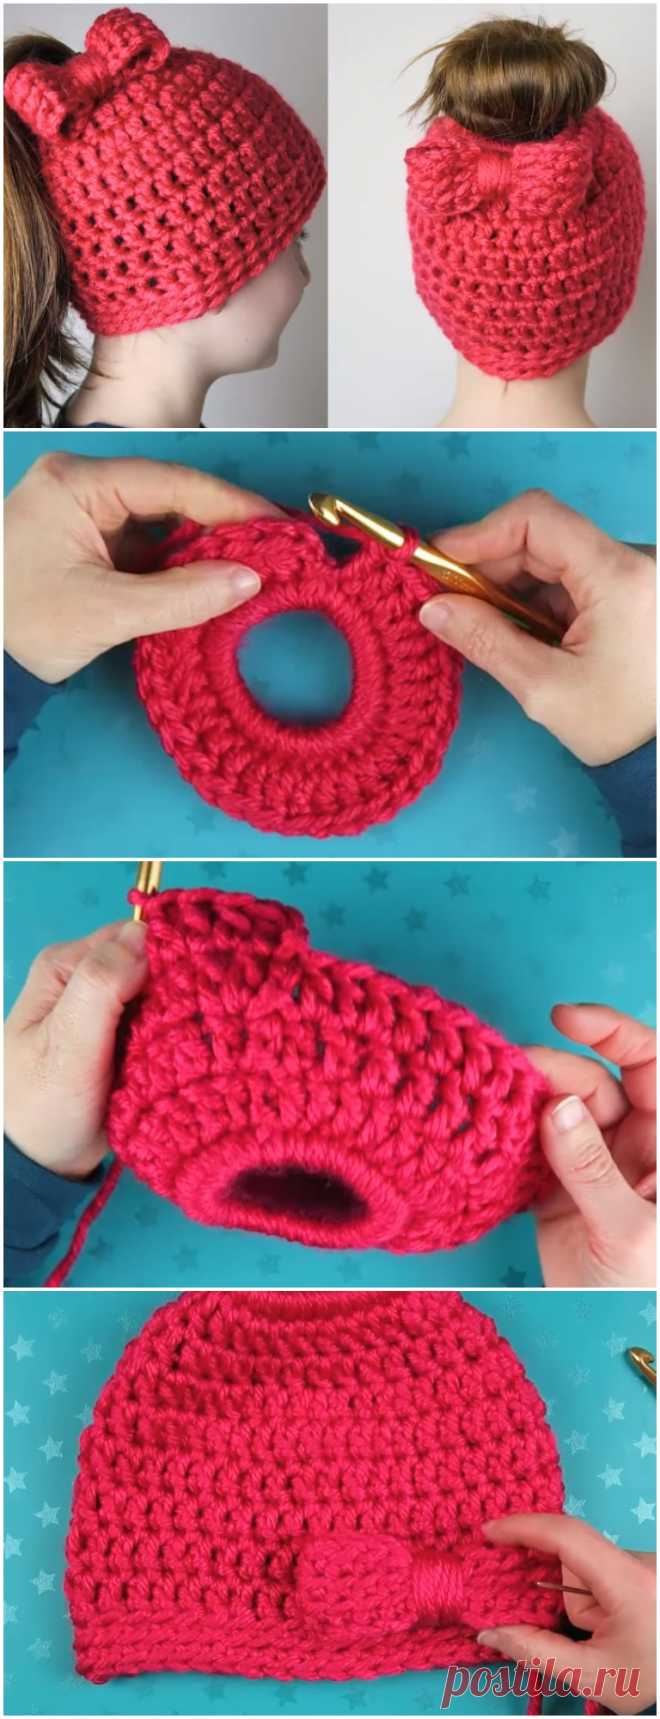 Crochet Beautiful Beanie Hat - Free Pattern [Video] - ilove-crochet